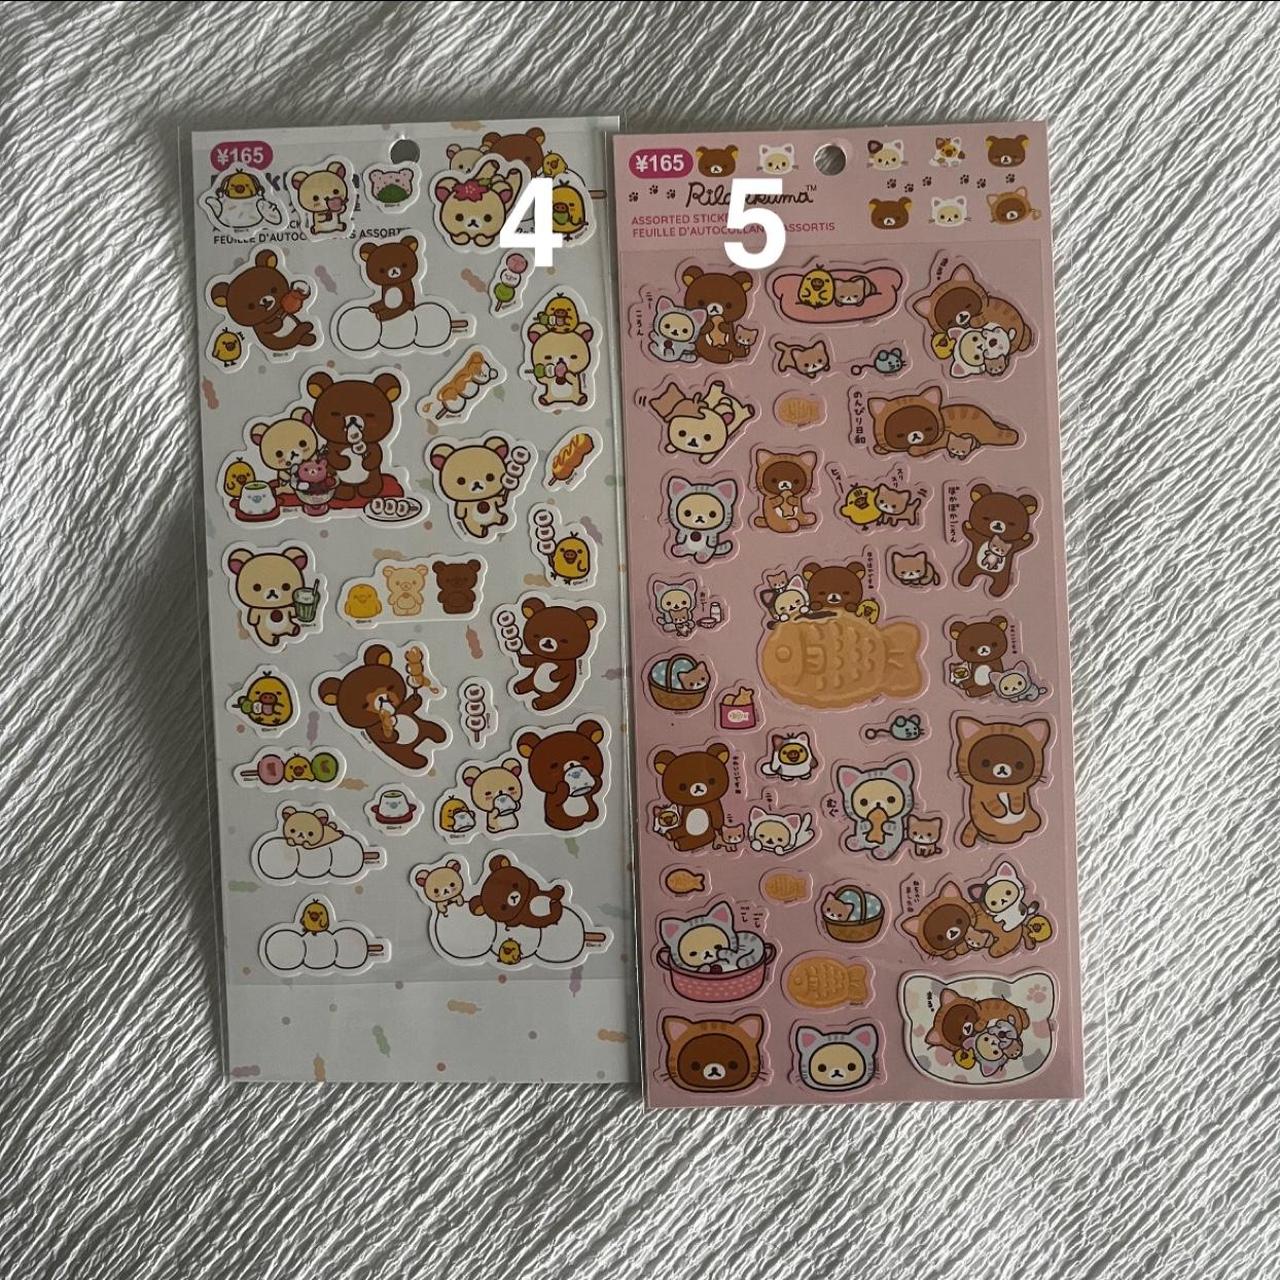 I bought Rilakkuma stickers at Daiso : r/rilakkuma